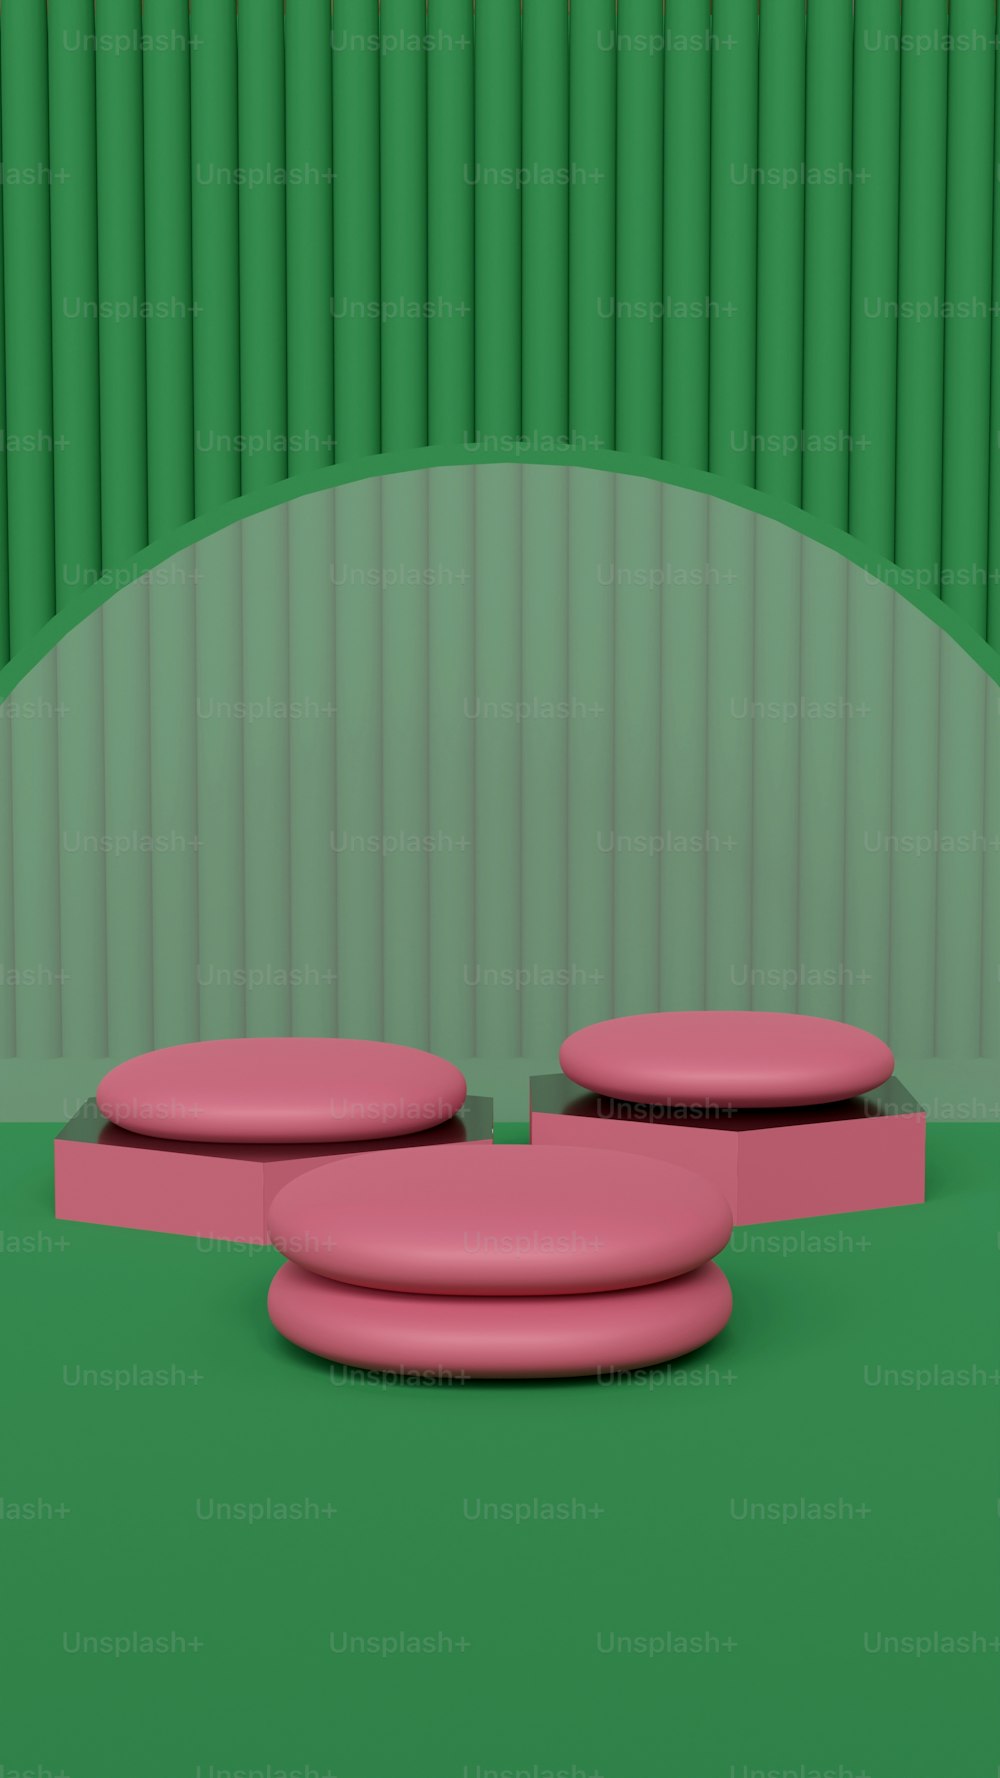 un oggetto rosa seduto sopra un pavimento verde